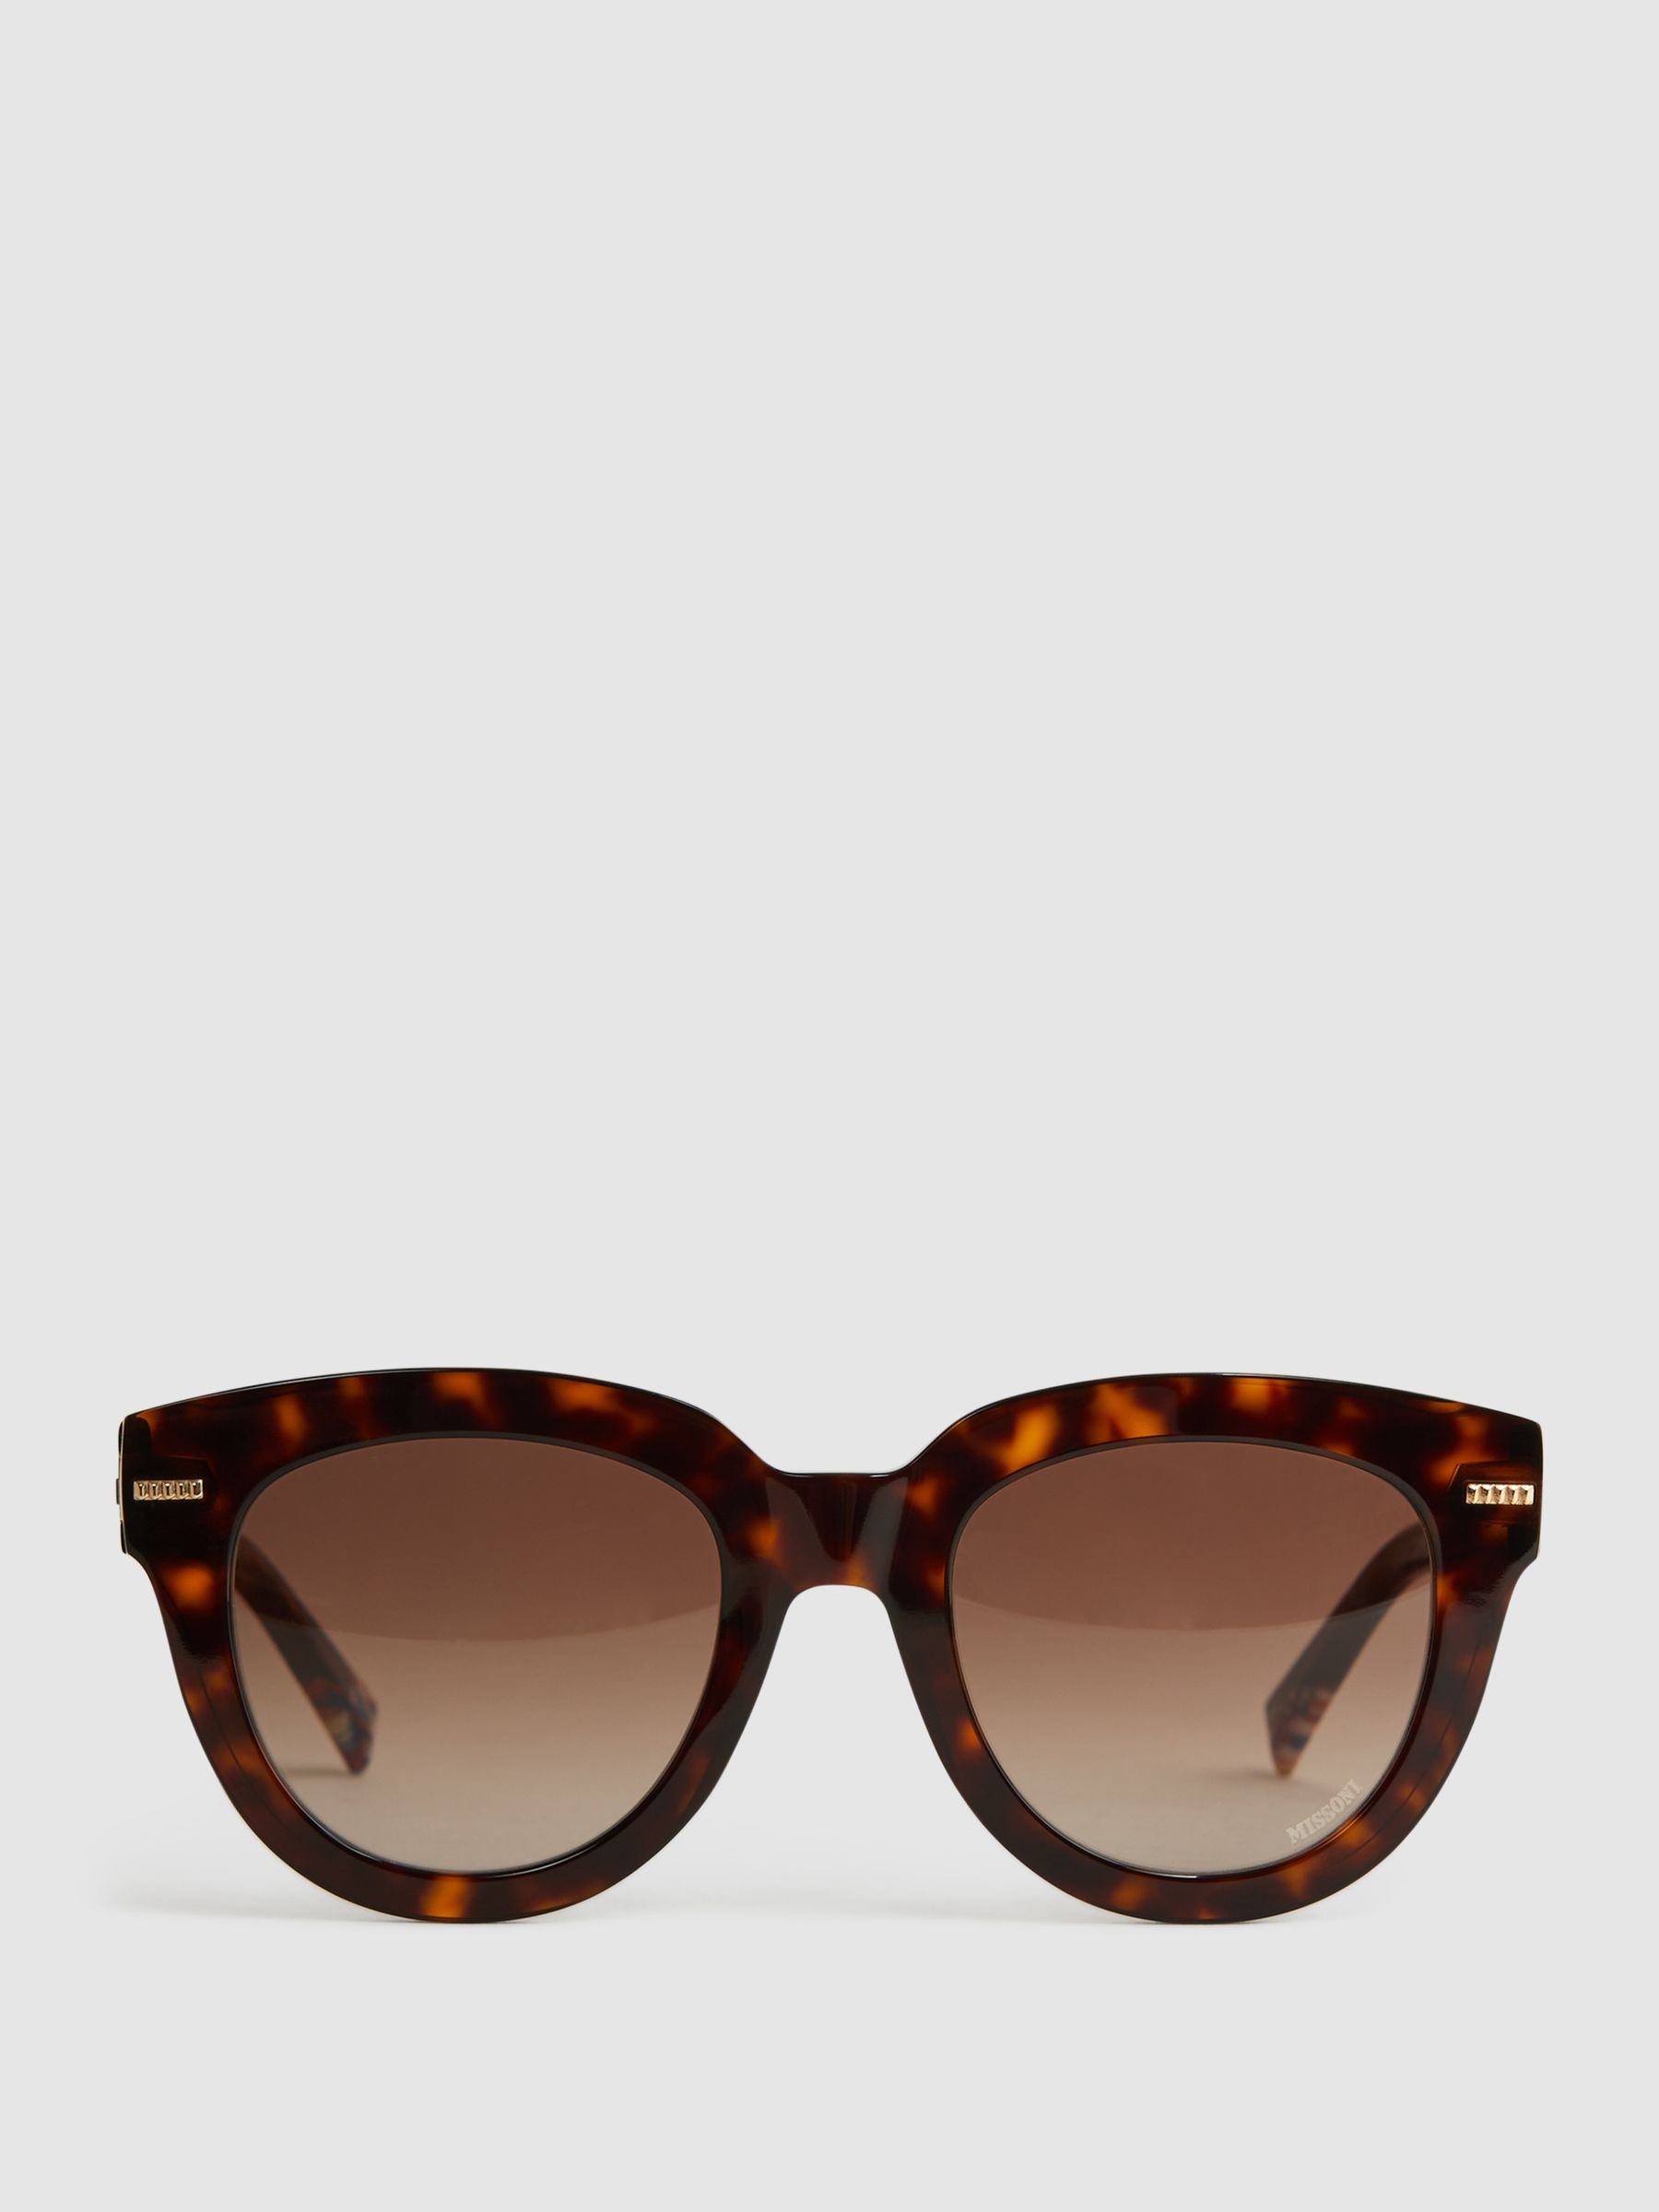 Reiss Missoni Eyewear Round Tortoiseshell Sunglasses - REISS